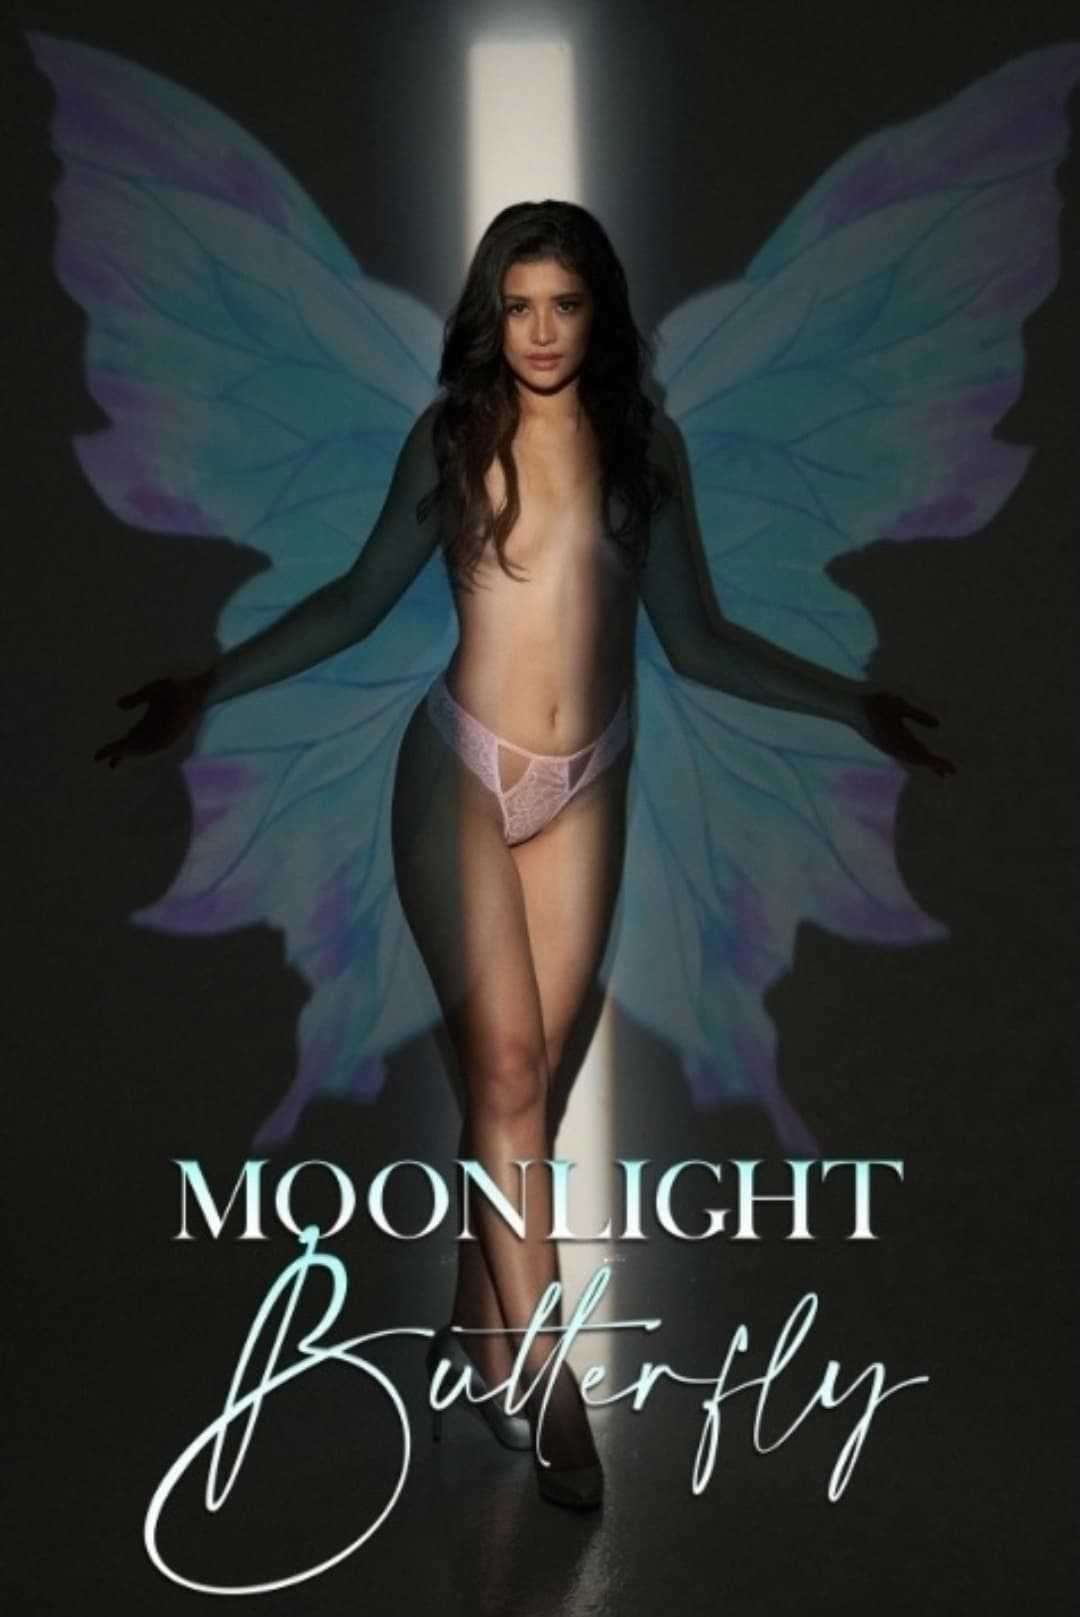 Bướm ánh trăng - Moonlight butterfly